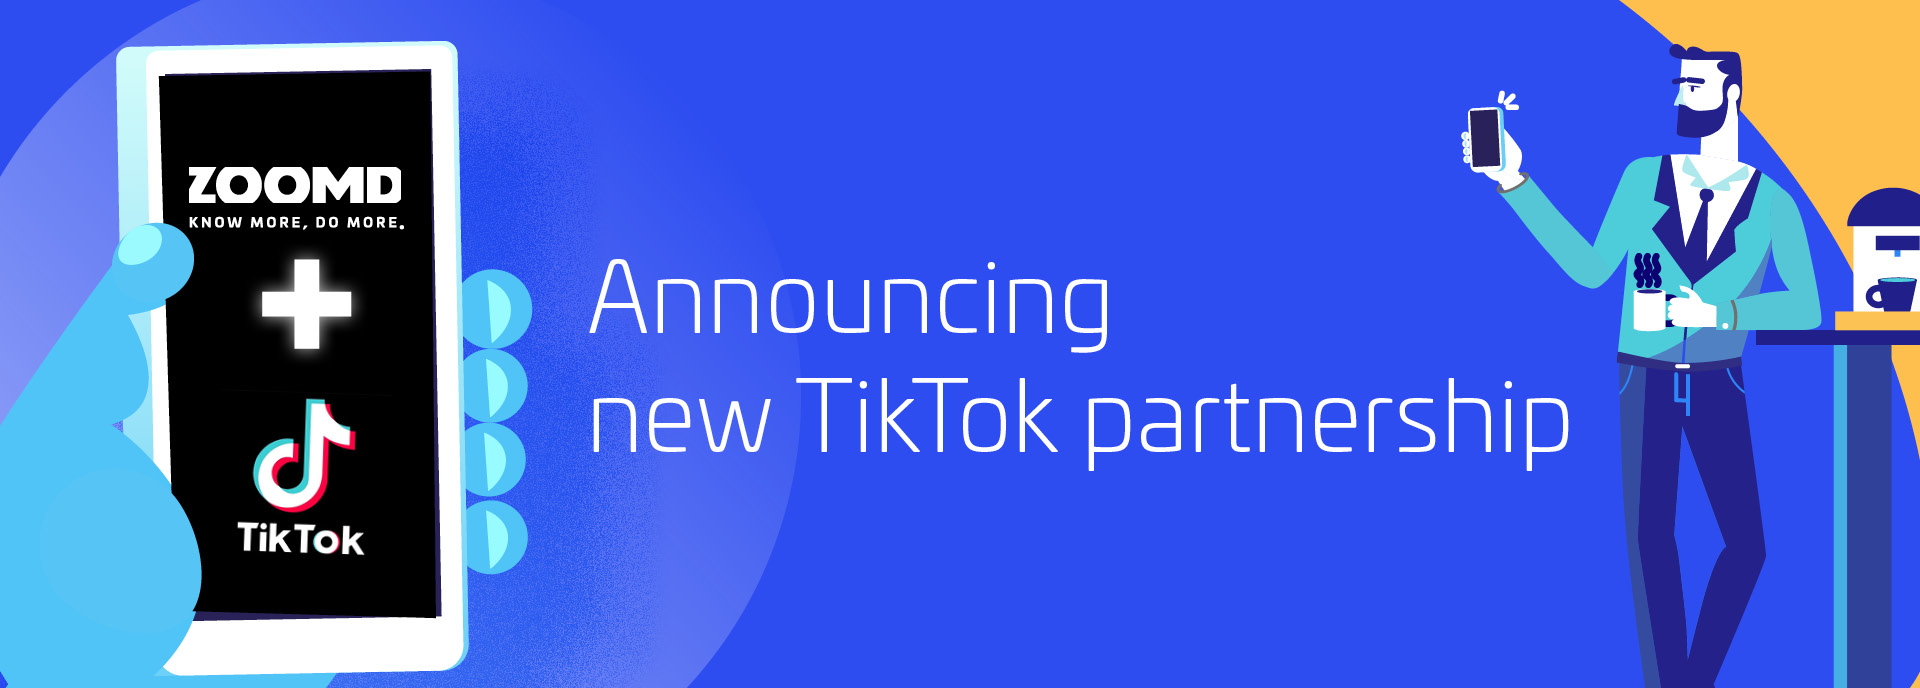 Zoomd Blog- TikTok Partnership